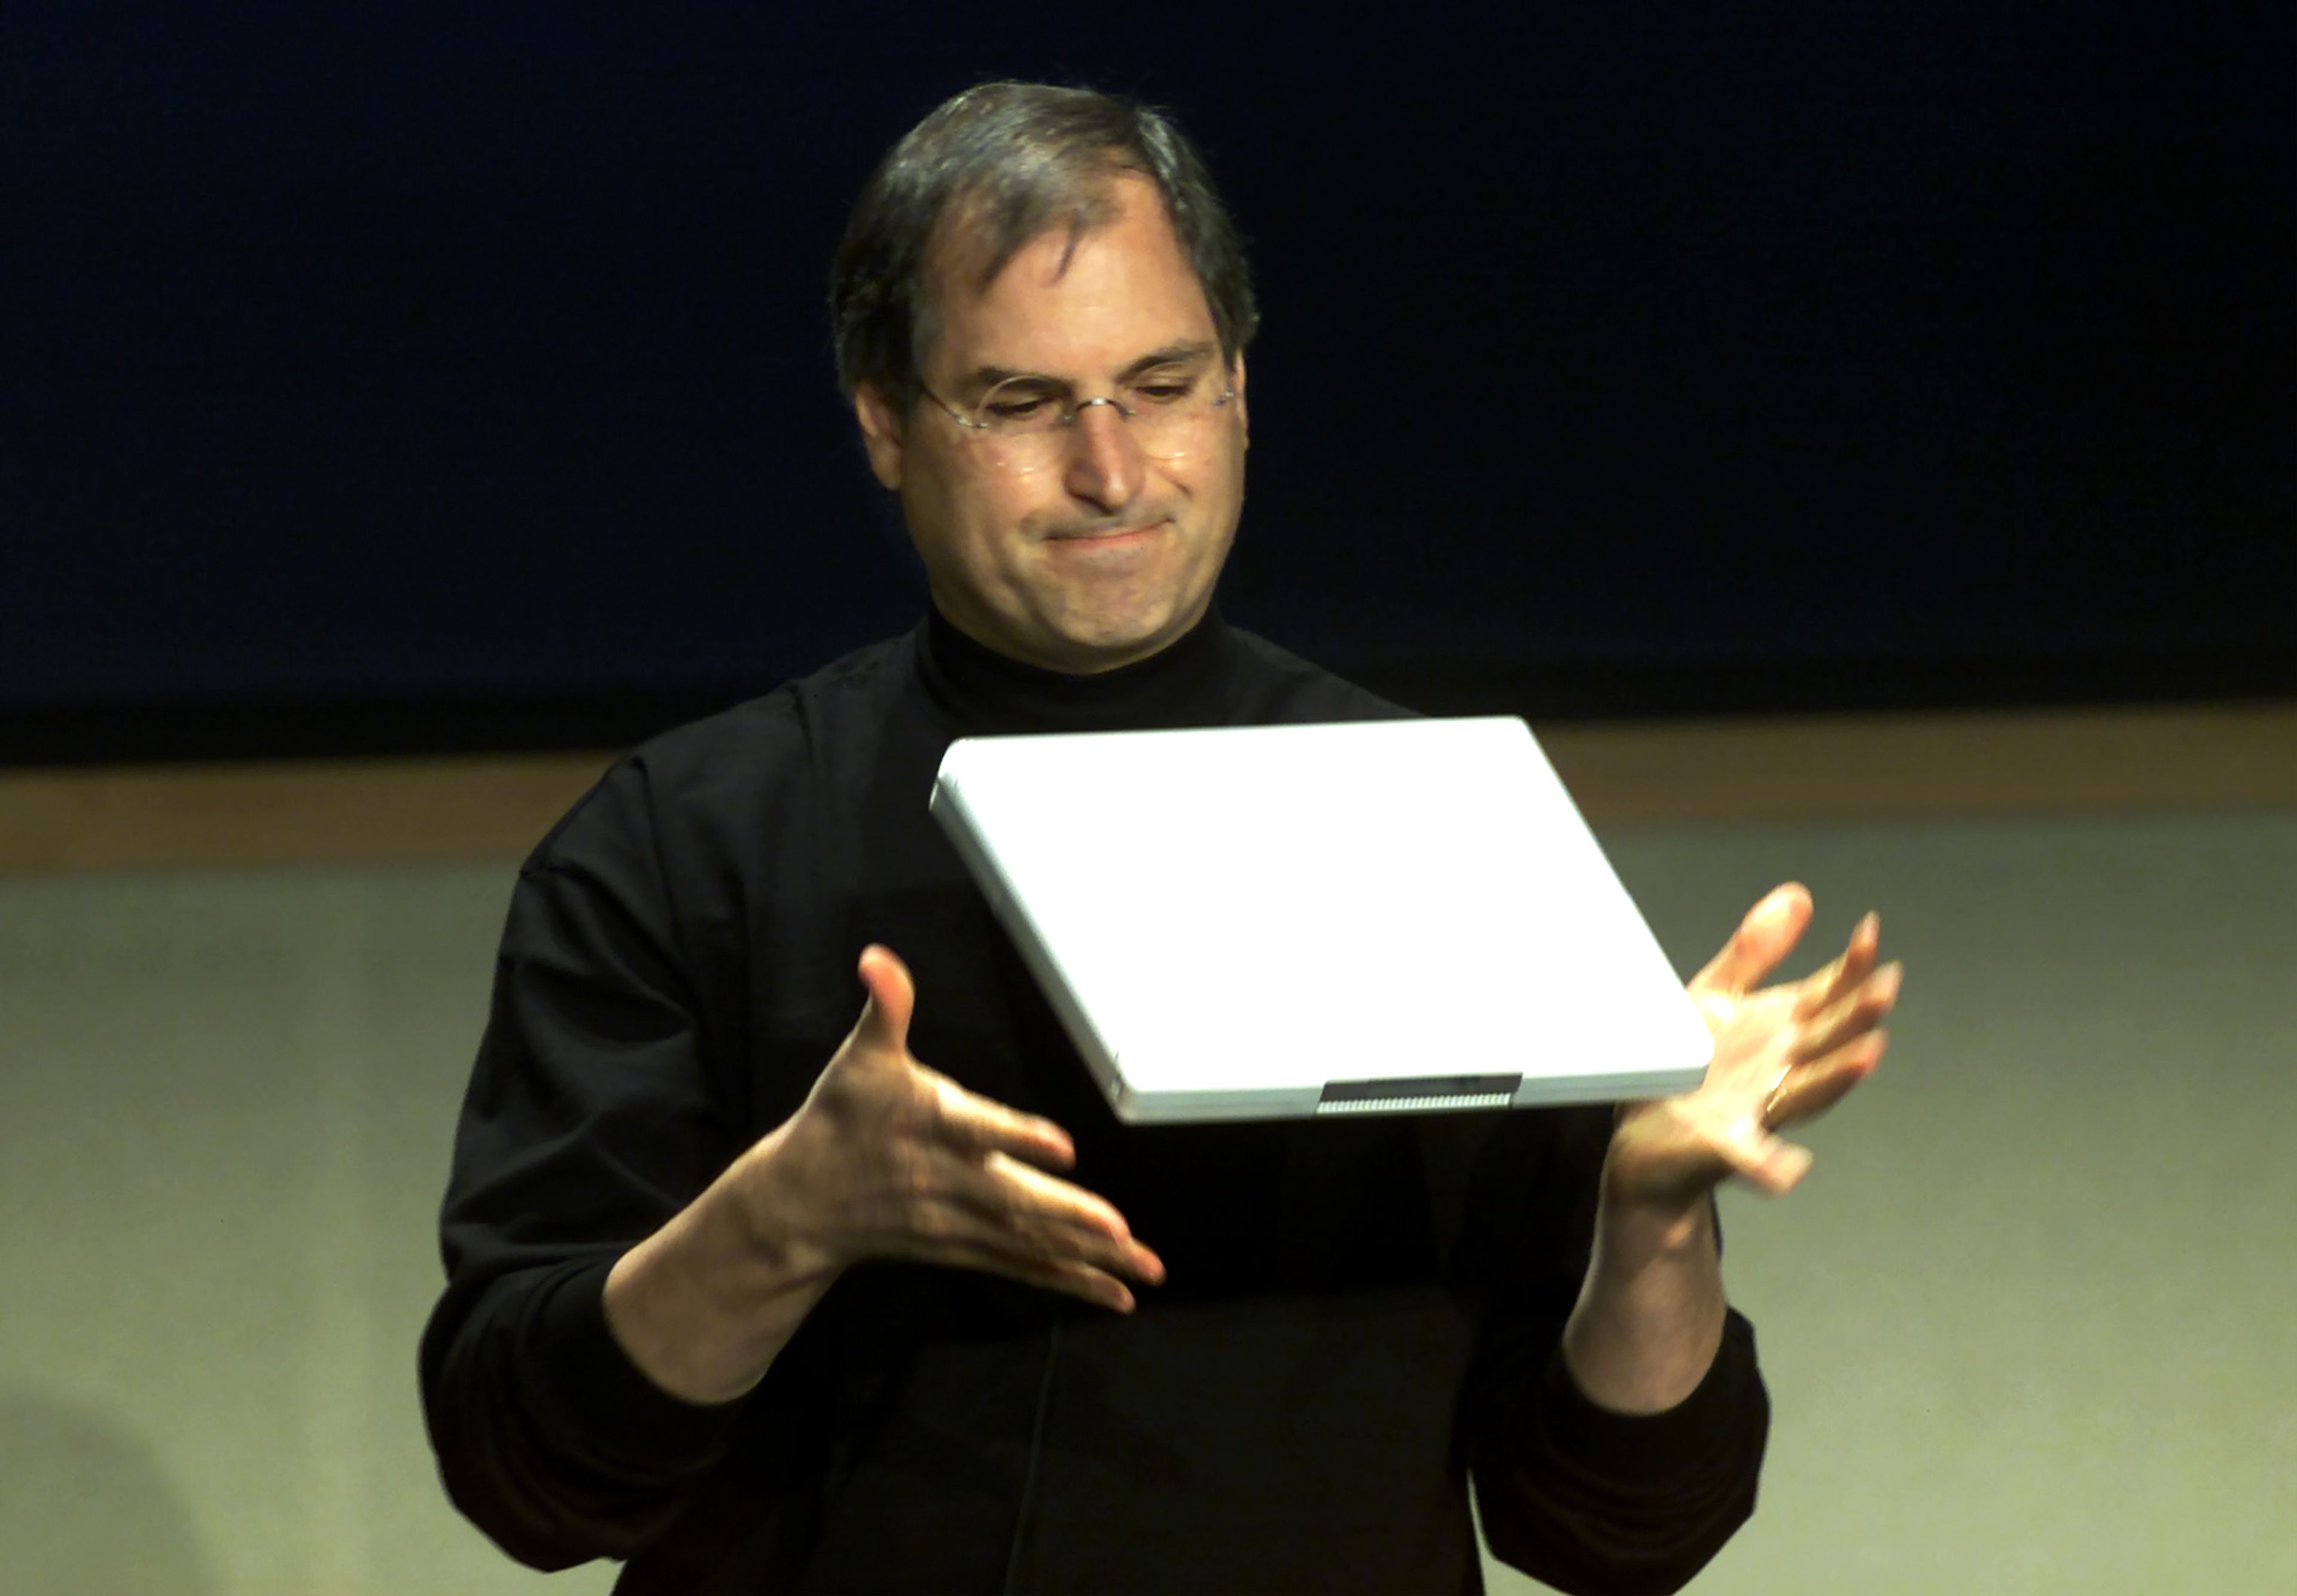 Steve Jobs en una foto de archivo de 2001 mostrando un iBook.